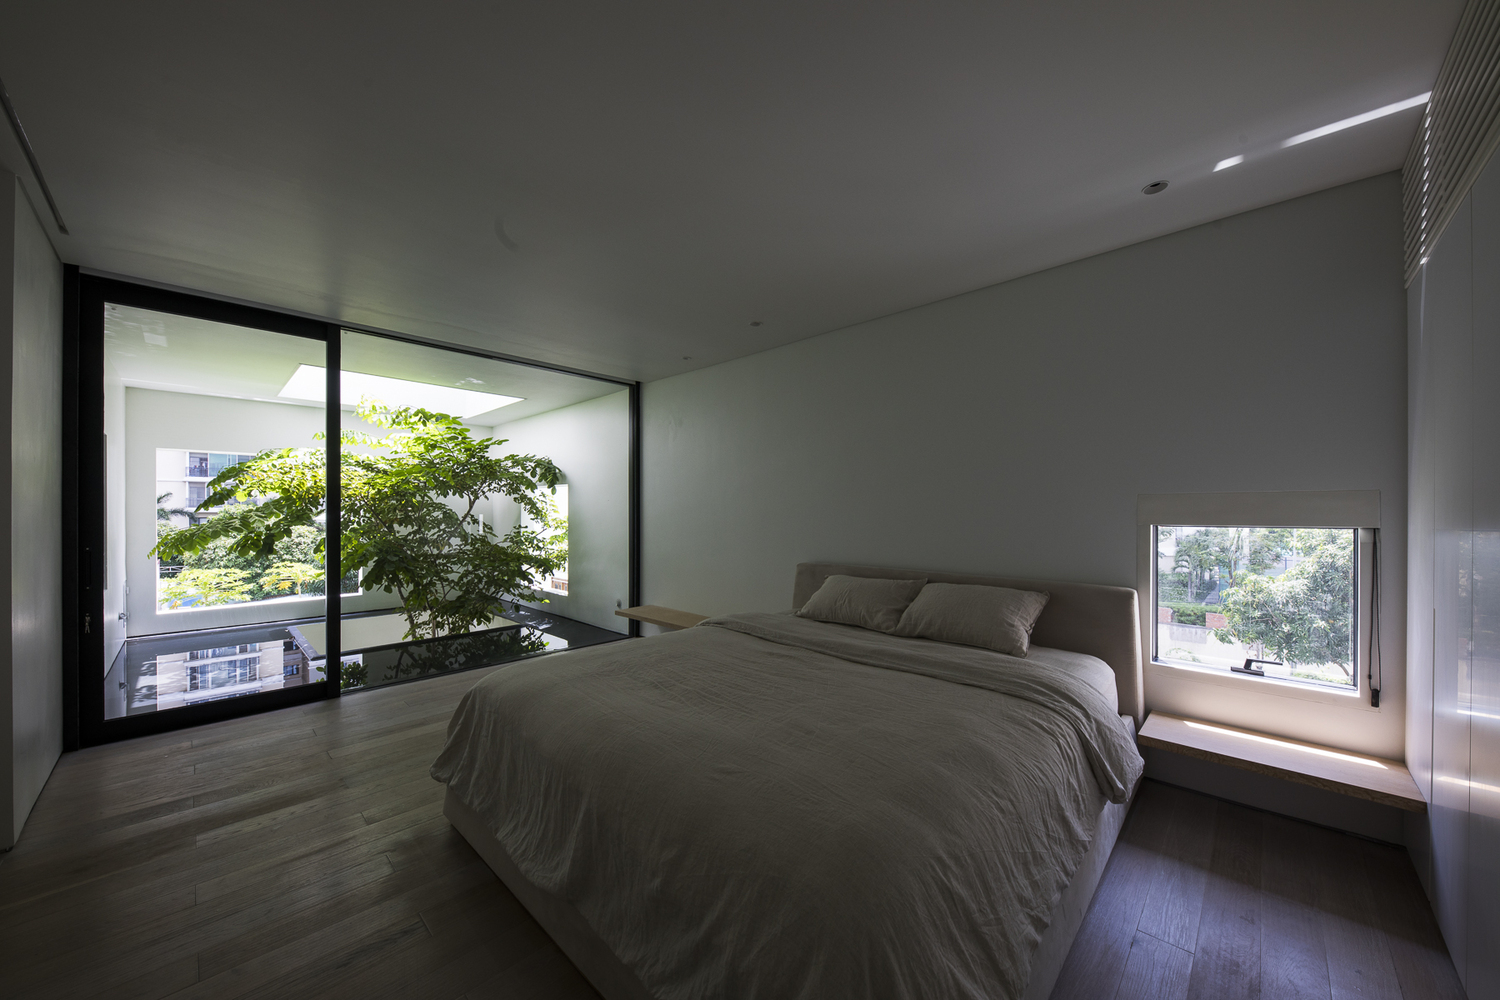 hình ảnh phòng ngủ với giường nệm màu trắng, sàn gỗ, cửa sổ kính, cửa mở ra thông tầng trồng cây xanh